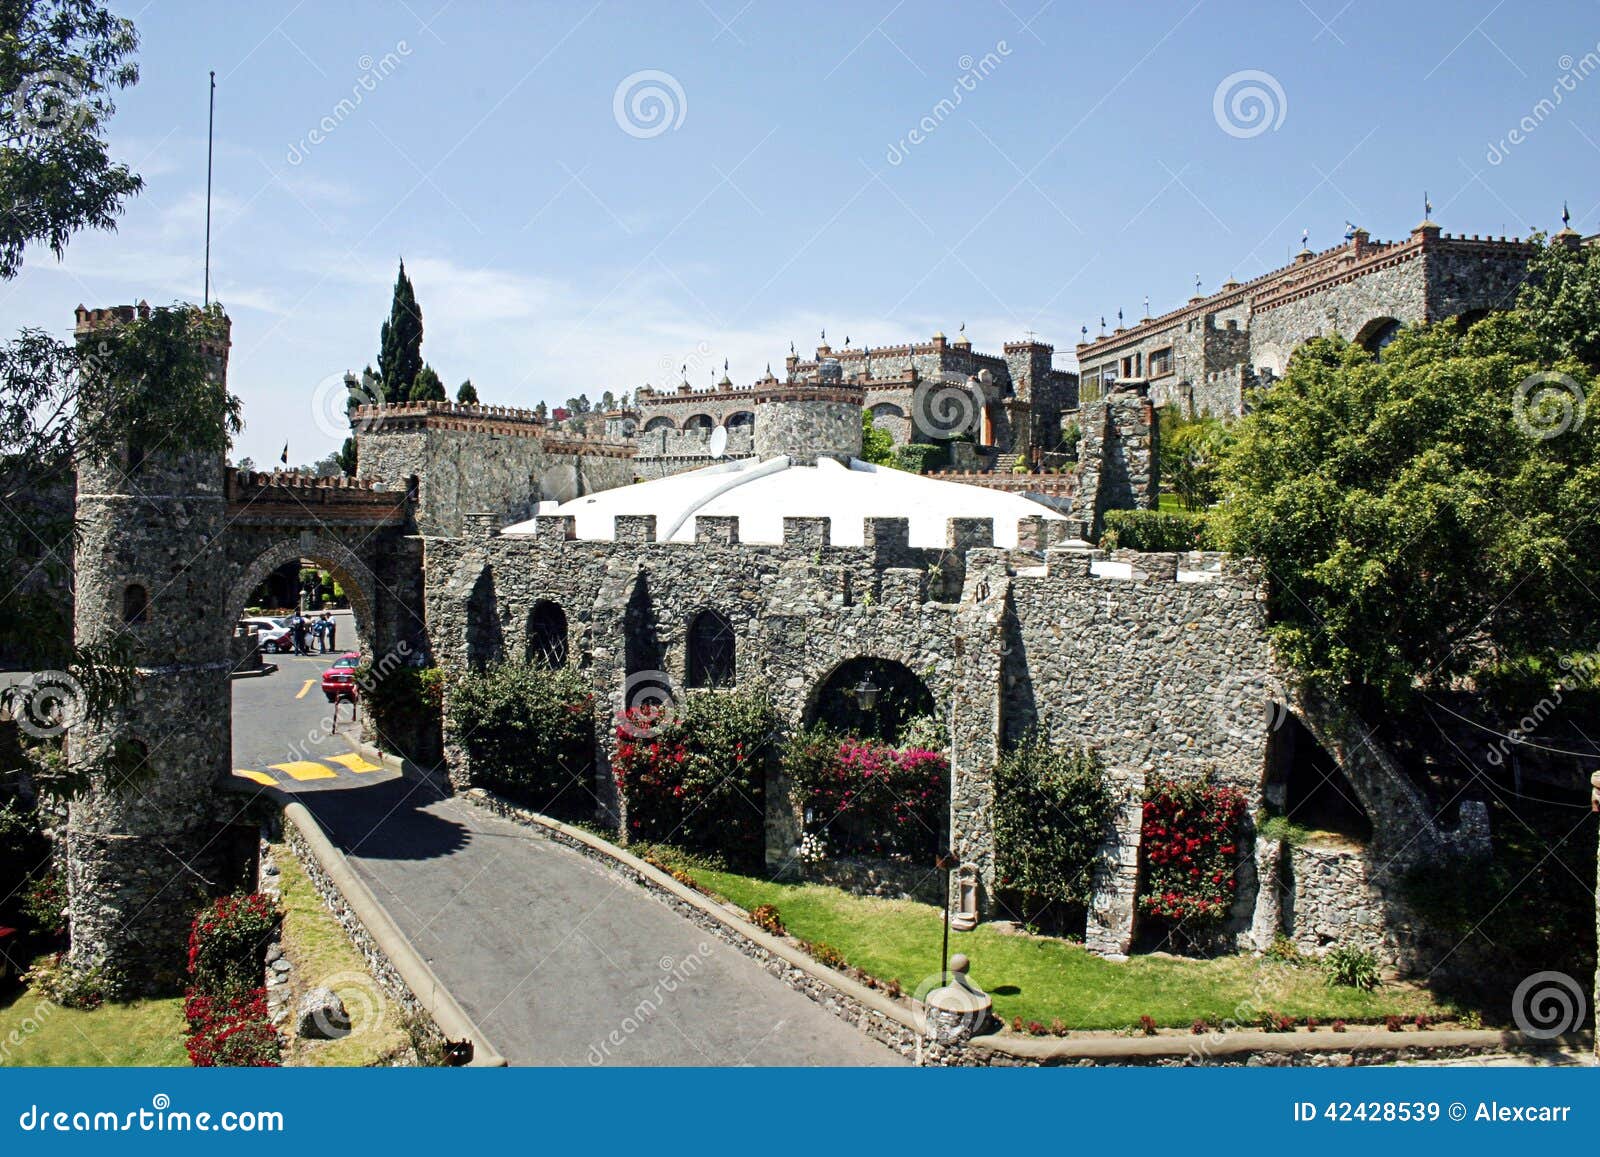 Santa Cecilia Castle stock image. Image of history, architecture - 42428539